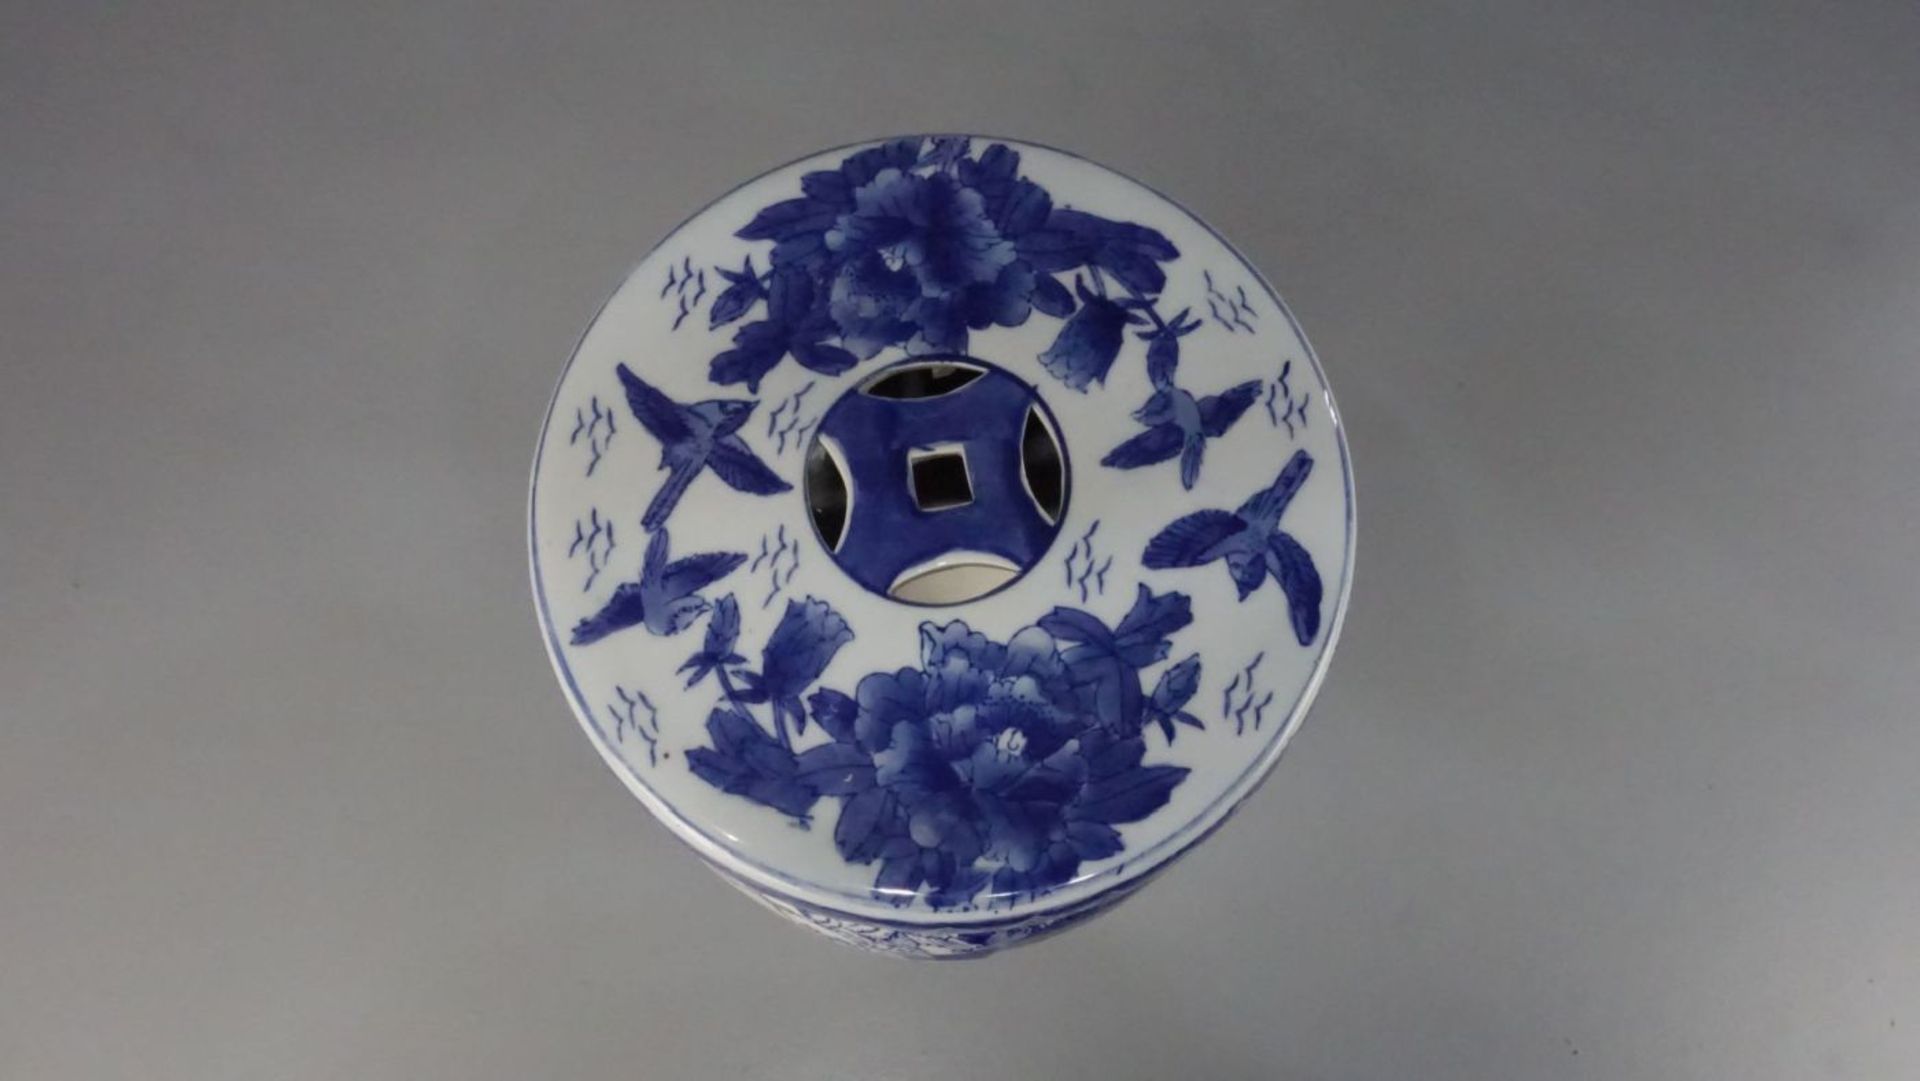 CHINESISCHER HOCKER / stool, Porzellan mit Blaumalerei (ungemarkt), 2. Hälfte 20. Jh.; Rundstand, - Image 2 of 5